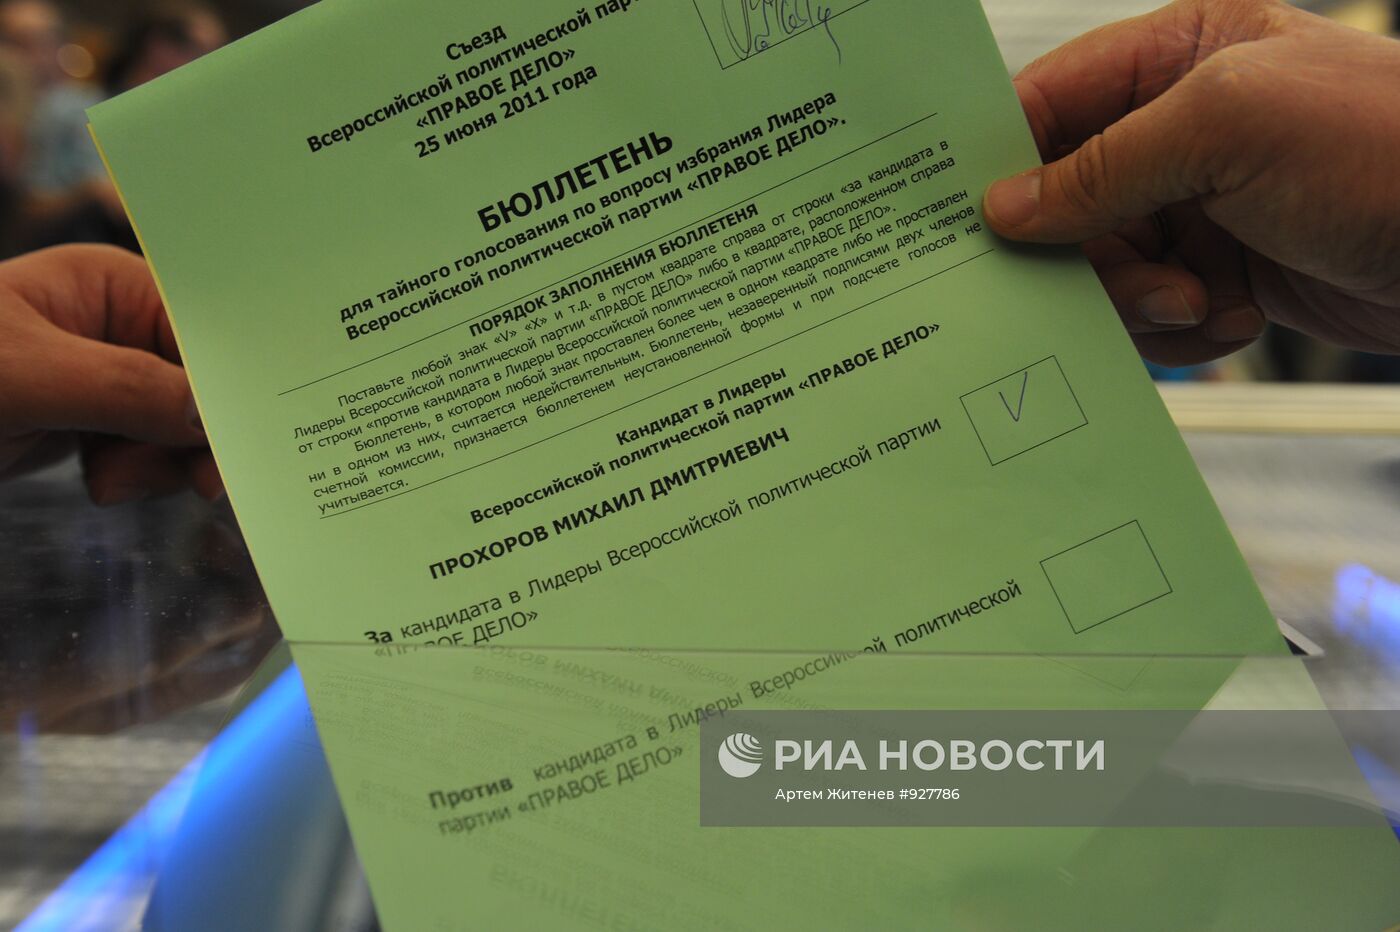 Бюллетень для голосования на выборах лидера партии "Правое дело"